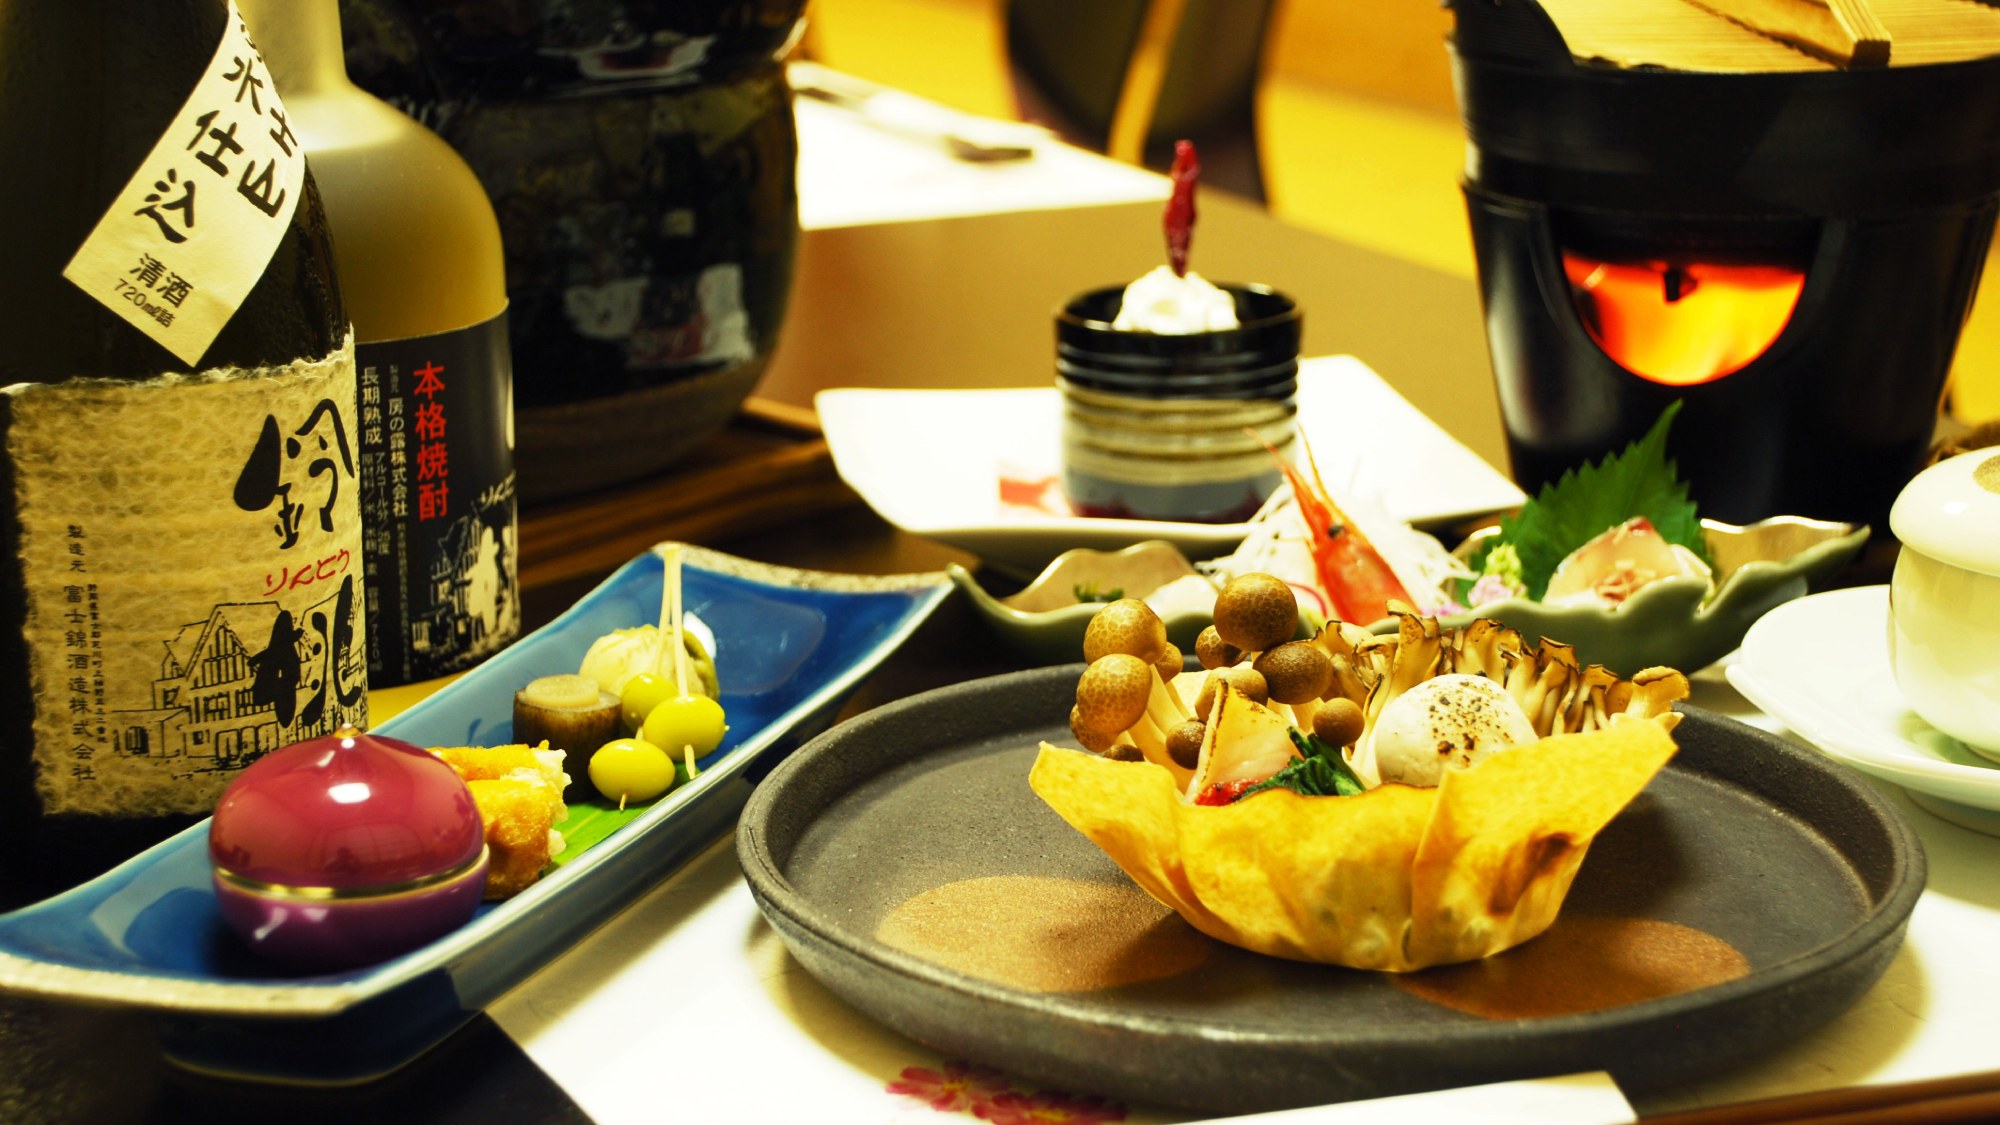 【お食事一例】季節のお料理と合わせて、鈴桃オリジナル冷酒をご堪能ください。